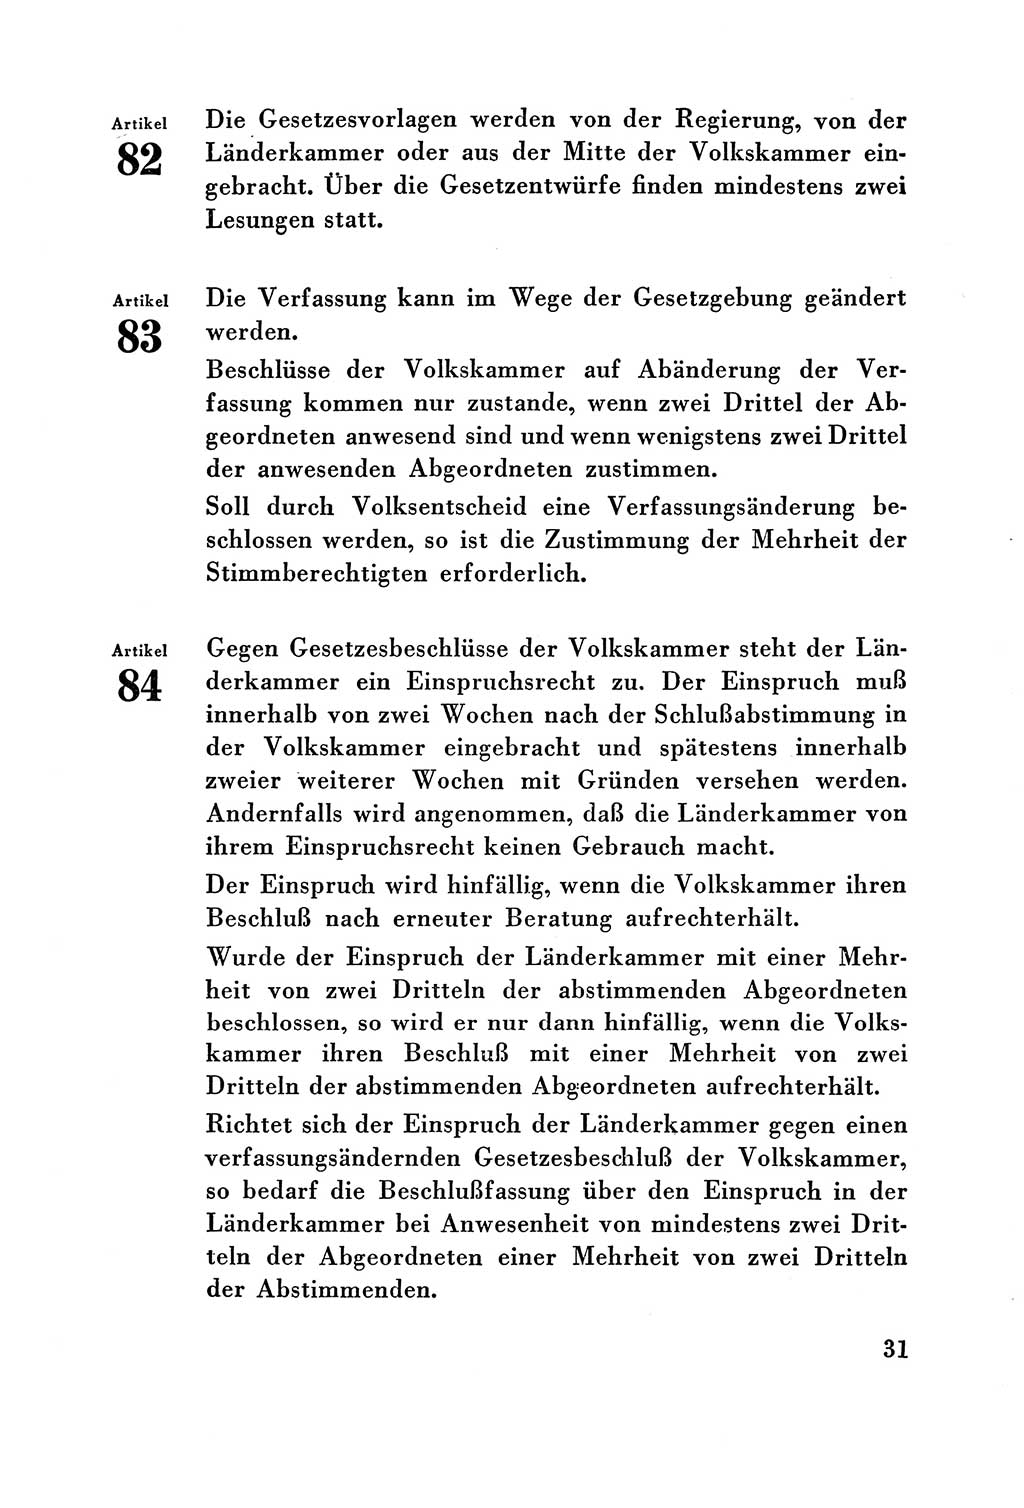 Verfassung der Deutschen Demokratischen Republik (DDR) vom 7. Oktober 1949, Seite 31 (Verf. DDR 1949, S. 31)